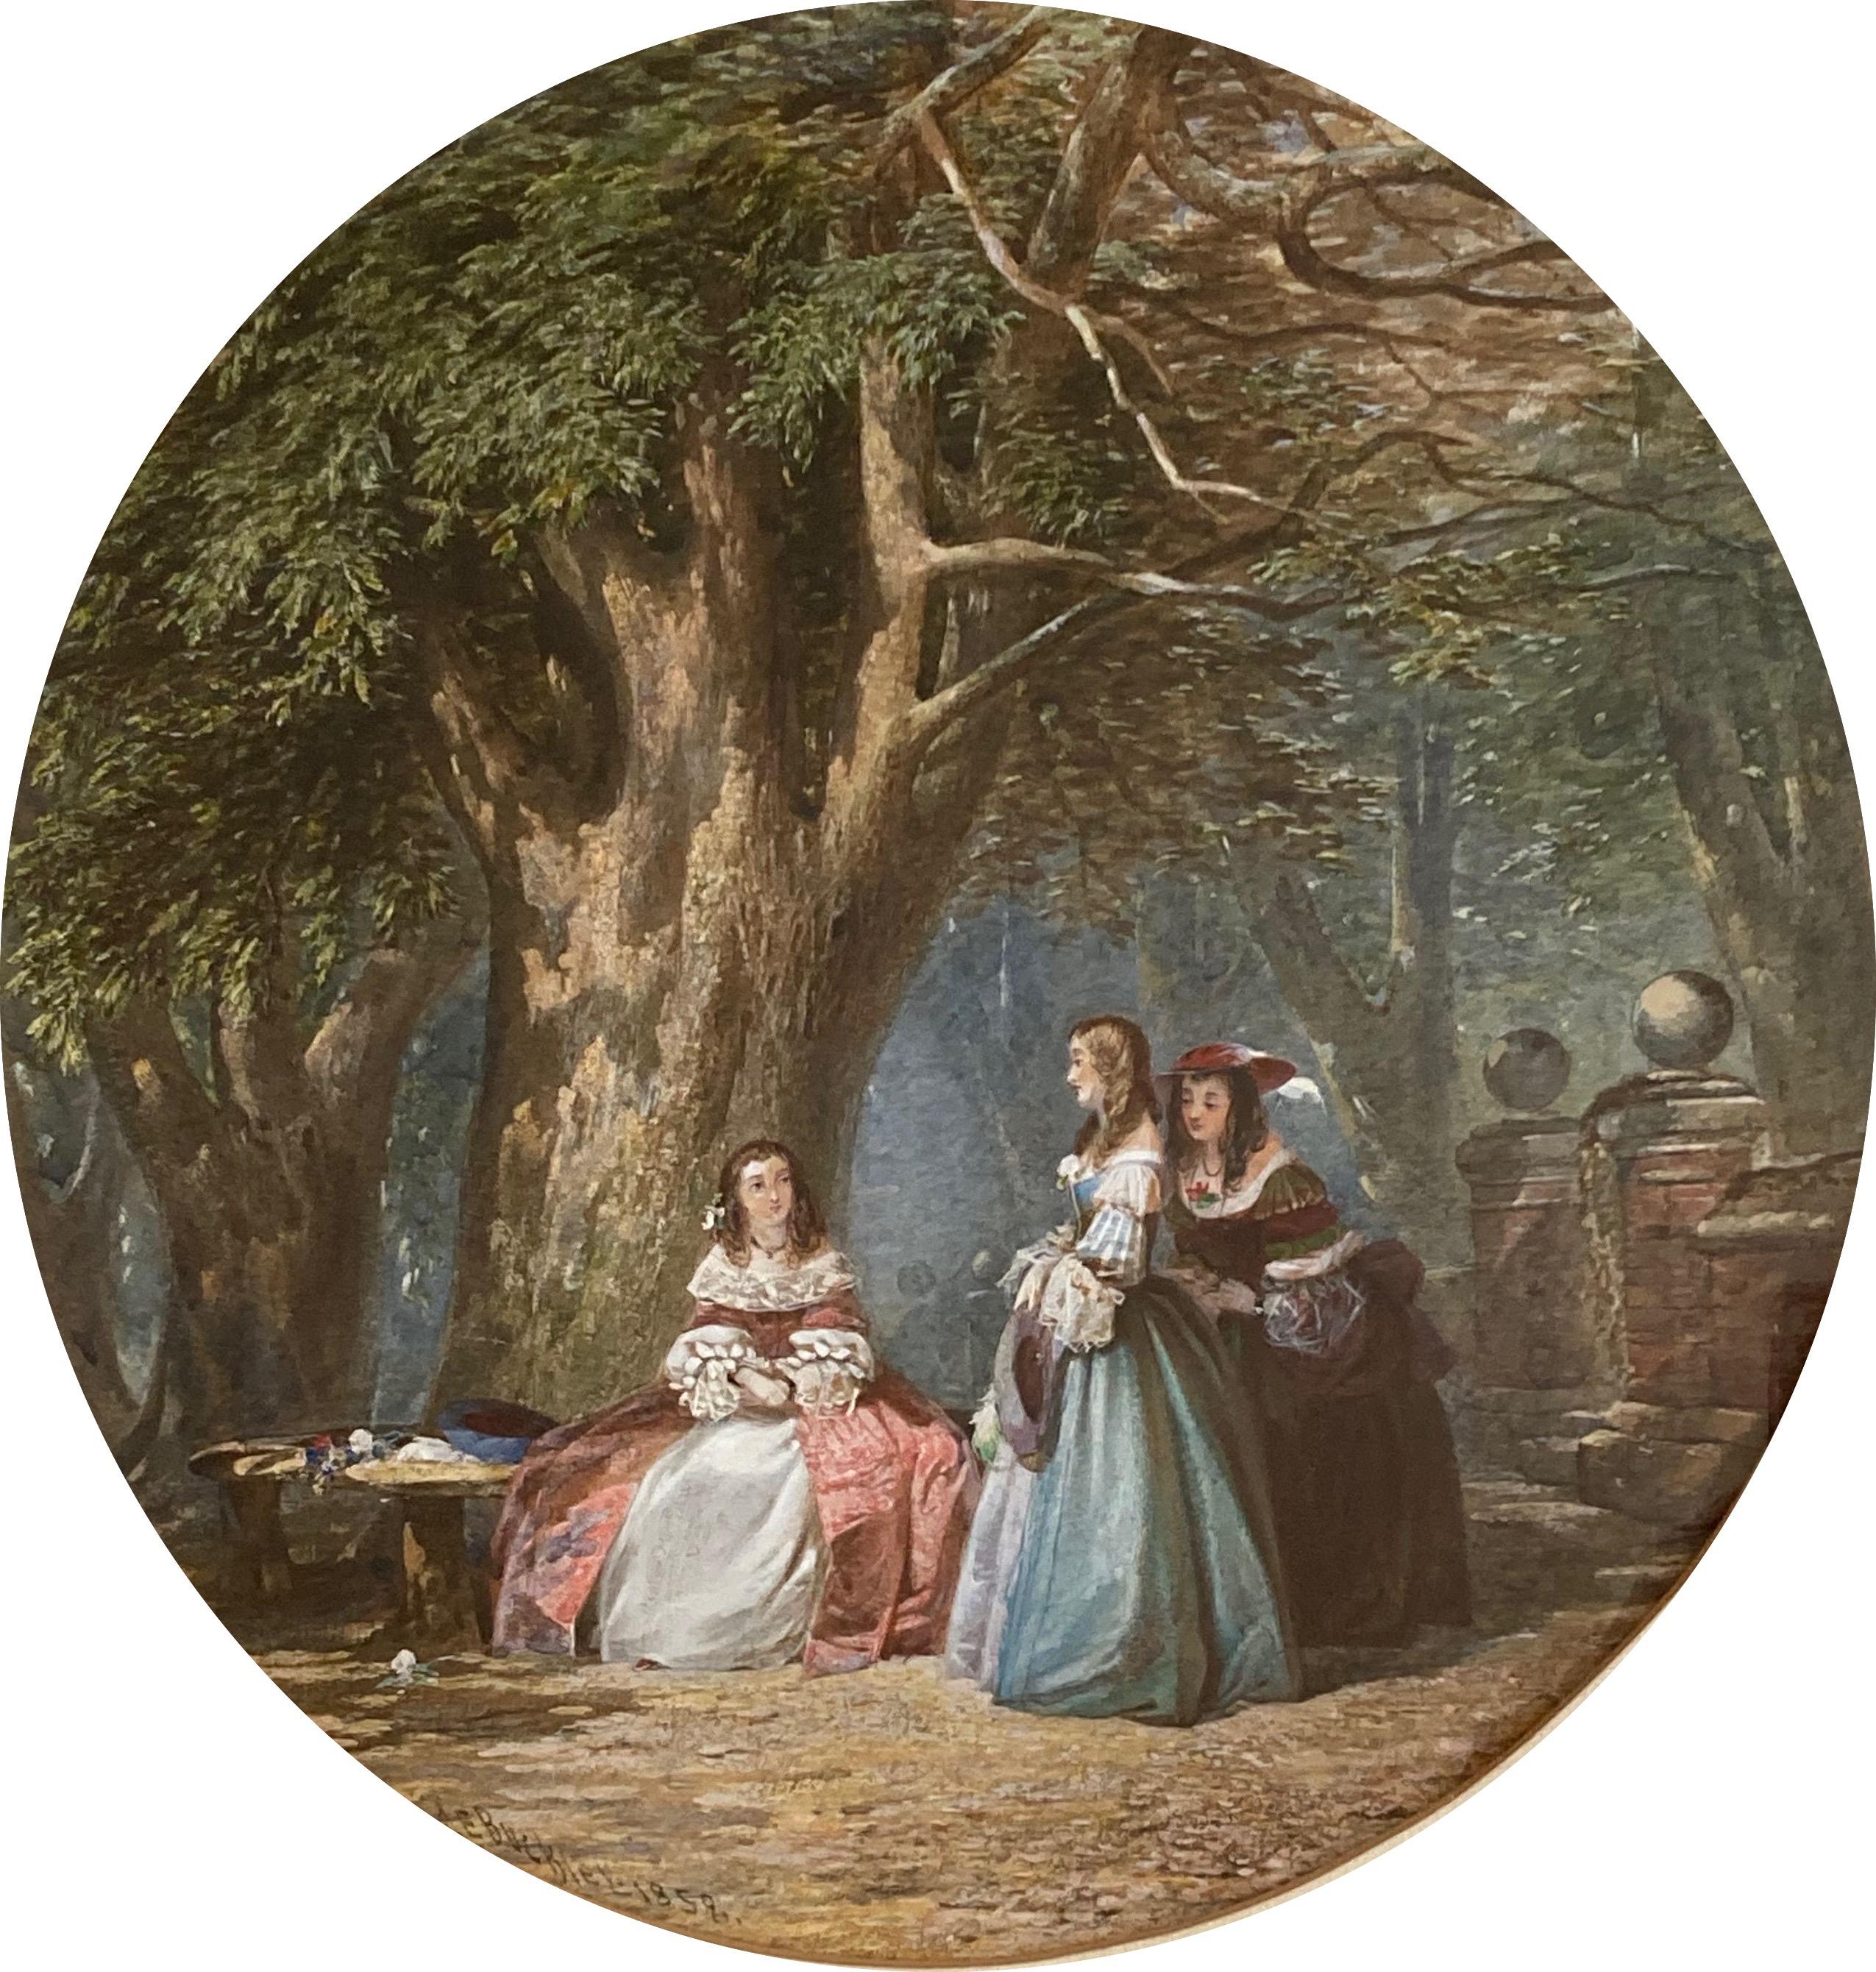 John Edmund Buckley, viktorianische Szene von Jungfrauen unter einem Eichenbaum